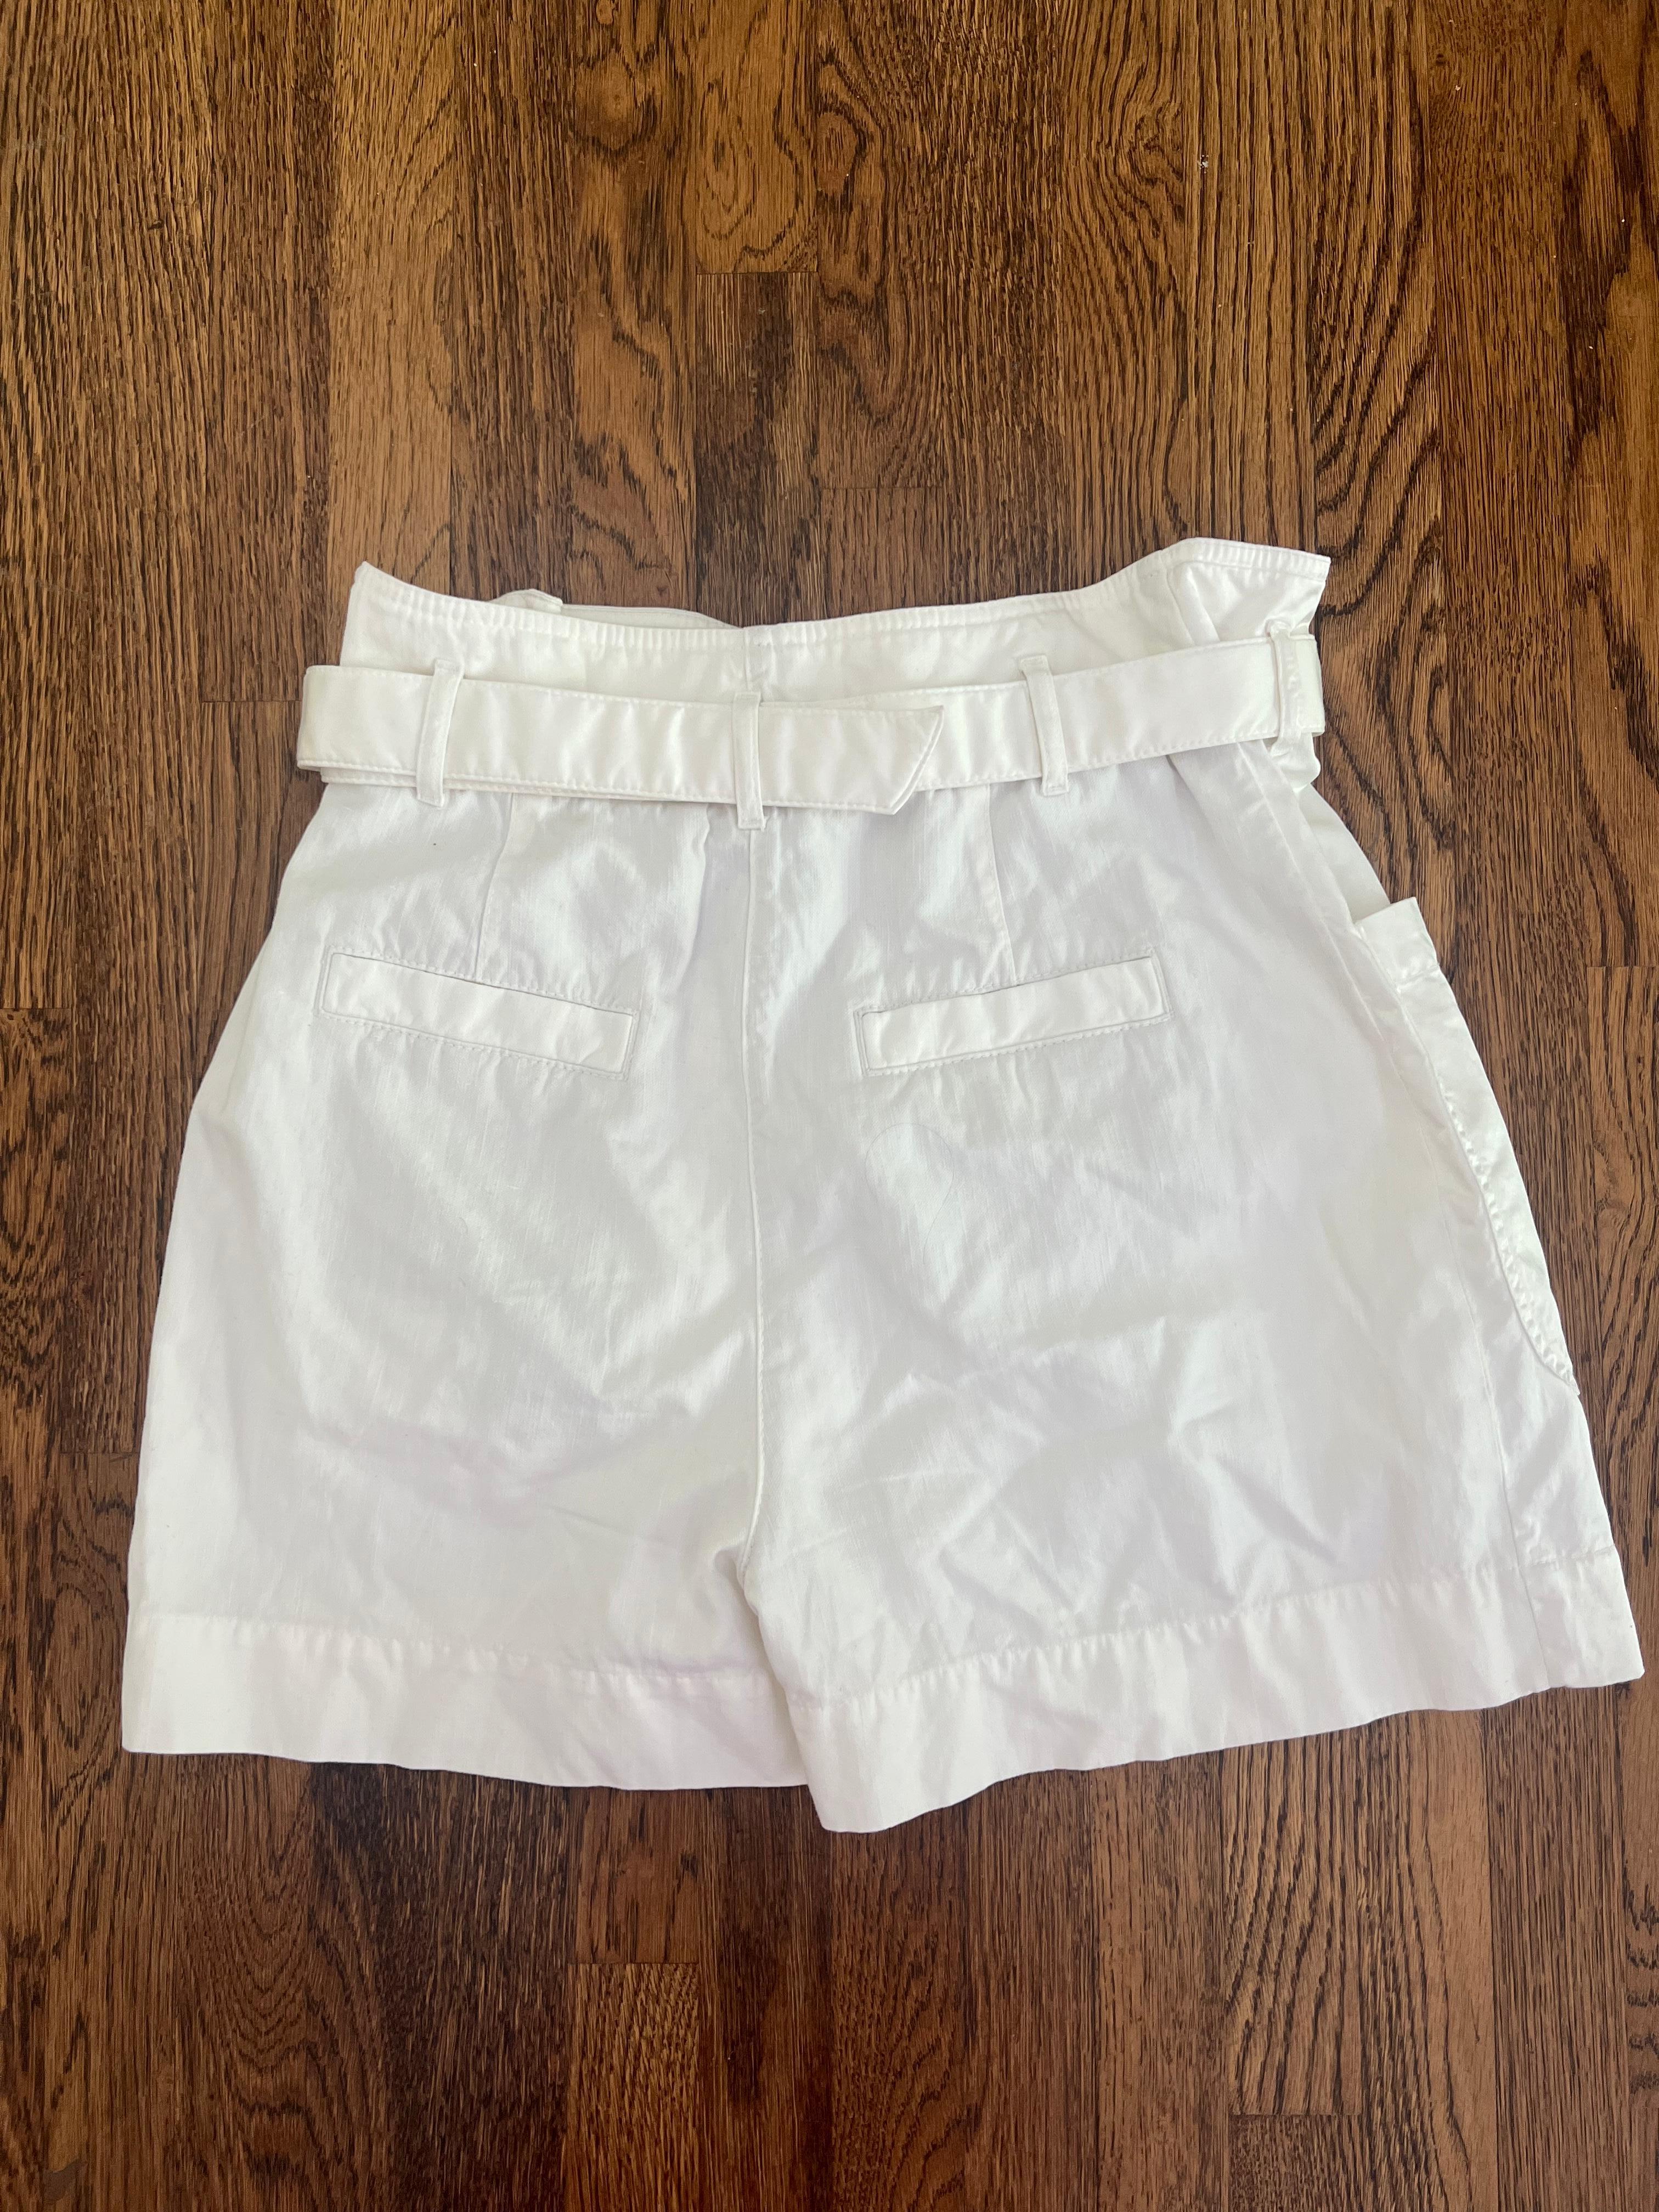 Brunello Cucinelli White Shorts, Size 42 For Sale 1